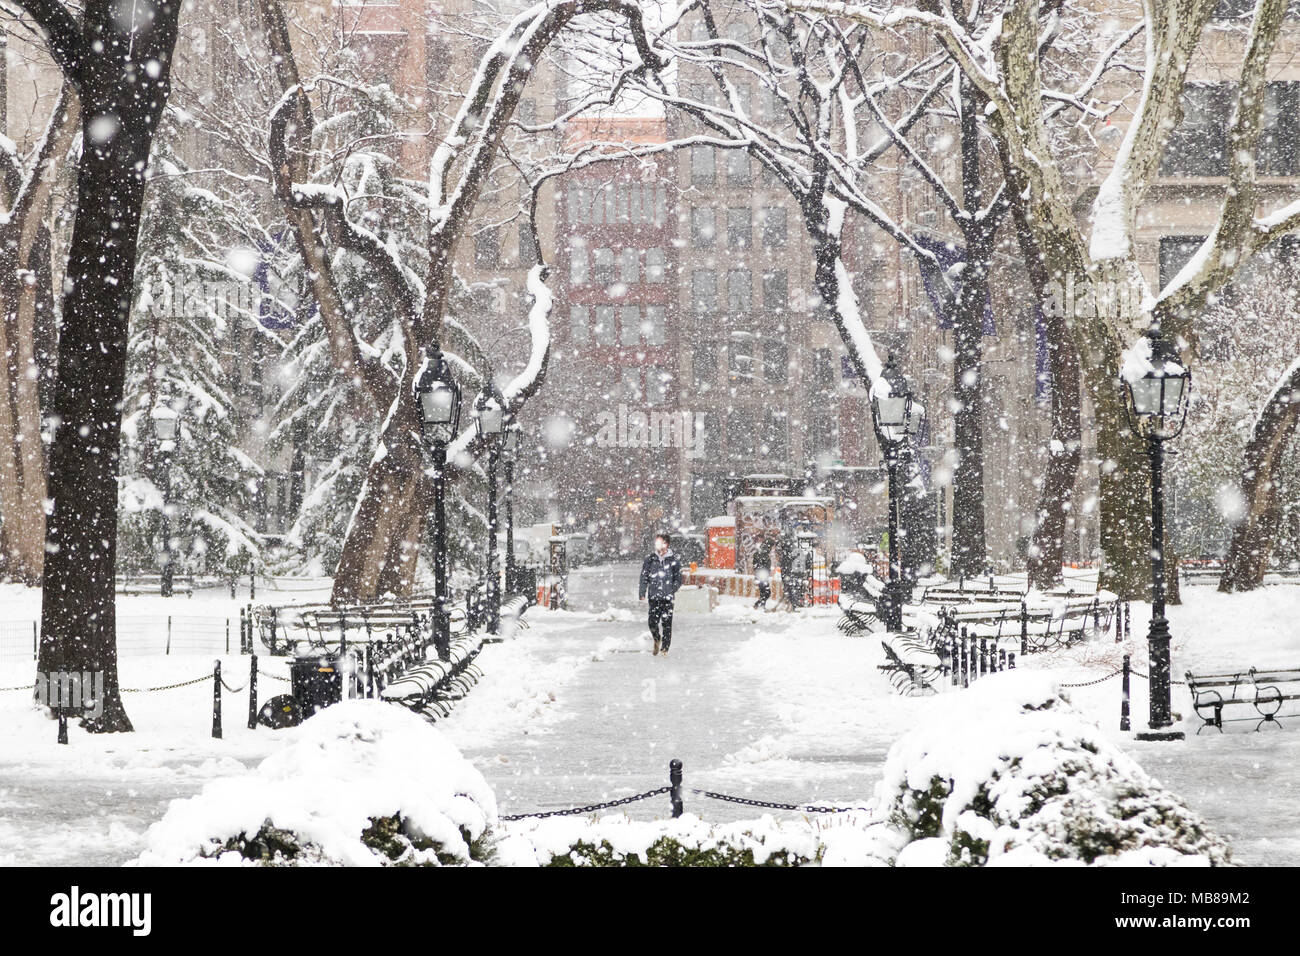 Mann zu Fuß durch eine verschneite Landschaft Blizzard in den Washington Square Park, New York City Stockfoto